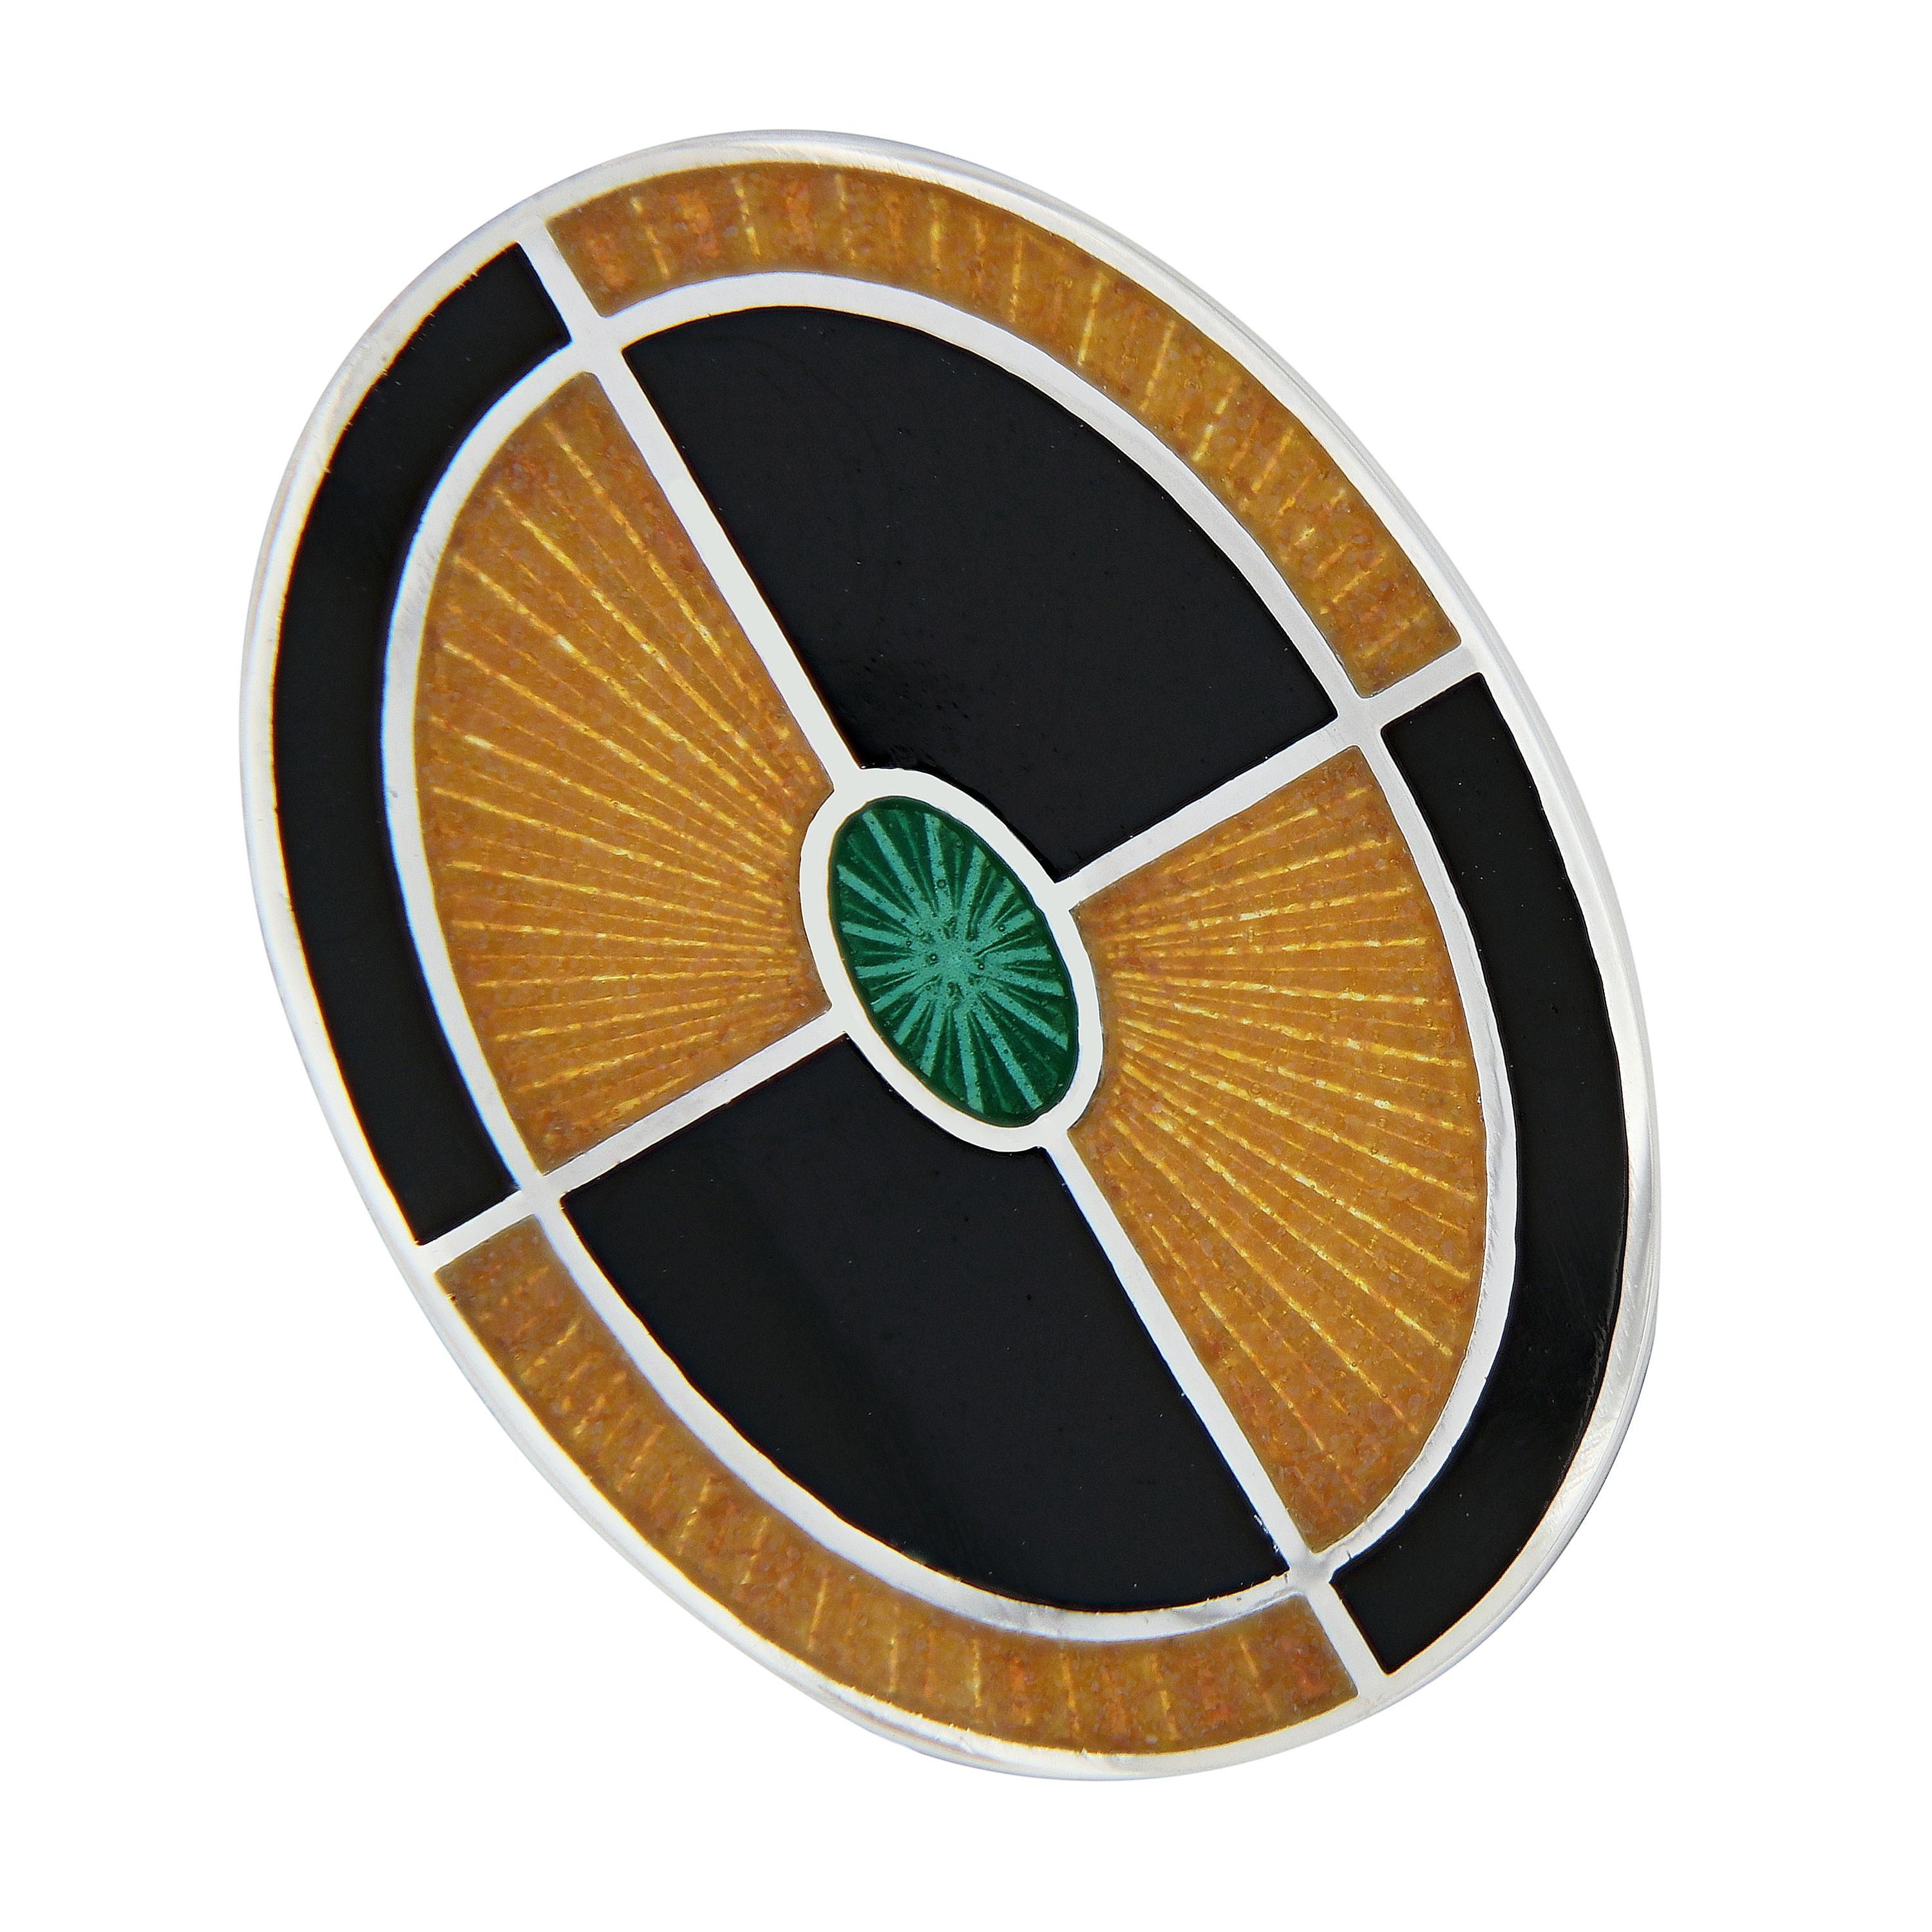 Schöne Manschettenknöpfe mit Guilloche-Emaille im zeitgenössischen Design. Handgefertigt in England für Campanelli & Pear. Wiegt 12,6 Gramm. Das Oval misst 14 mm x 19 mm.